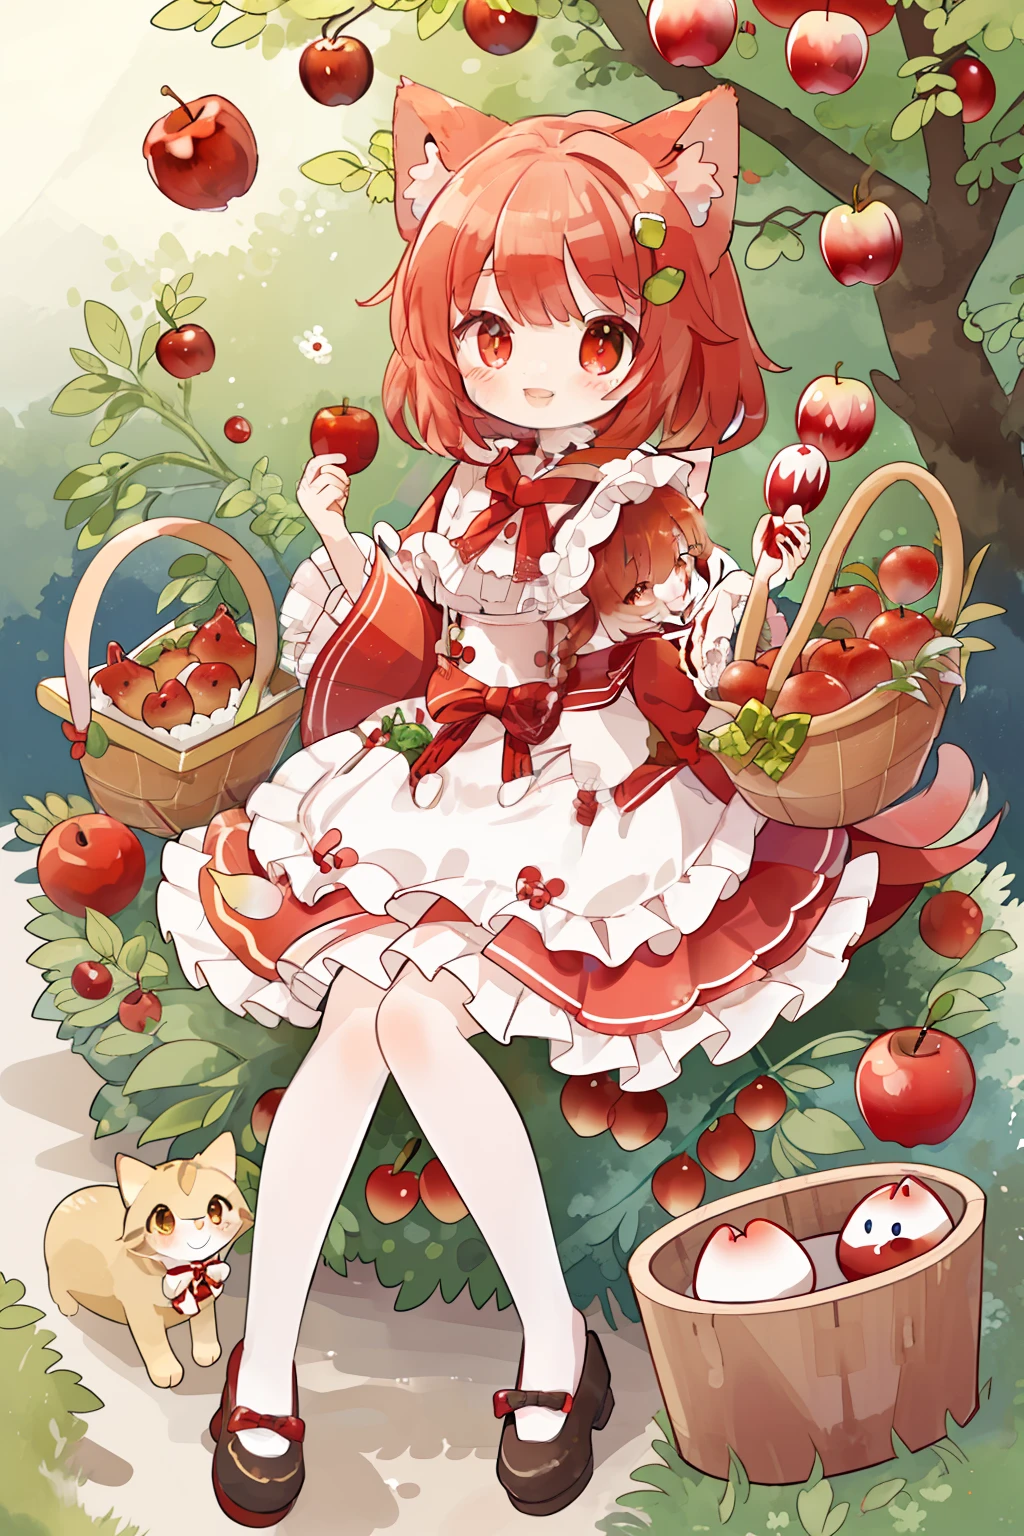 Personagem gato、Chapeuzinho Vermelho、na floresta、2 cabeça corpo、Sorriso sorridente、Cesta de maçã、animesque、no_humano